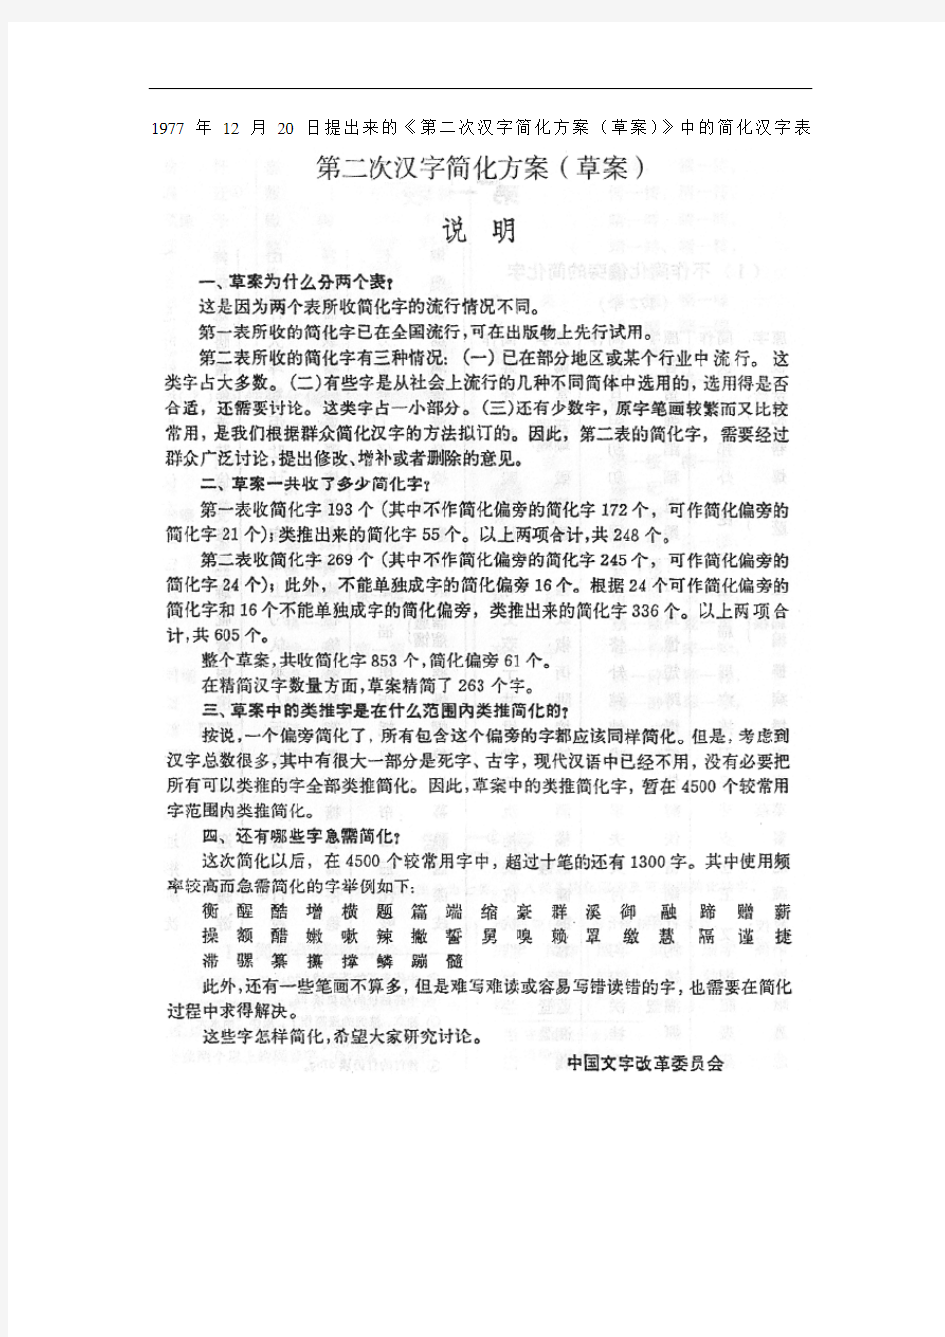 《第二次汉字简化方案》中的简化汉字